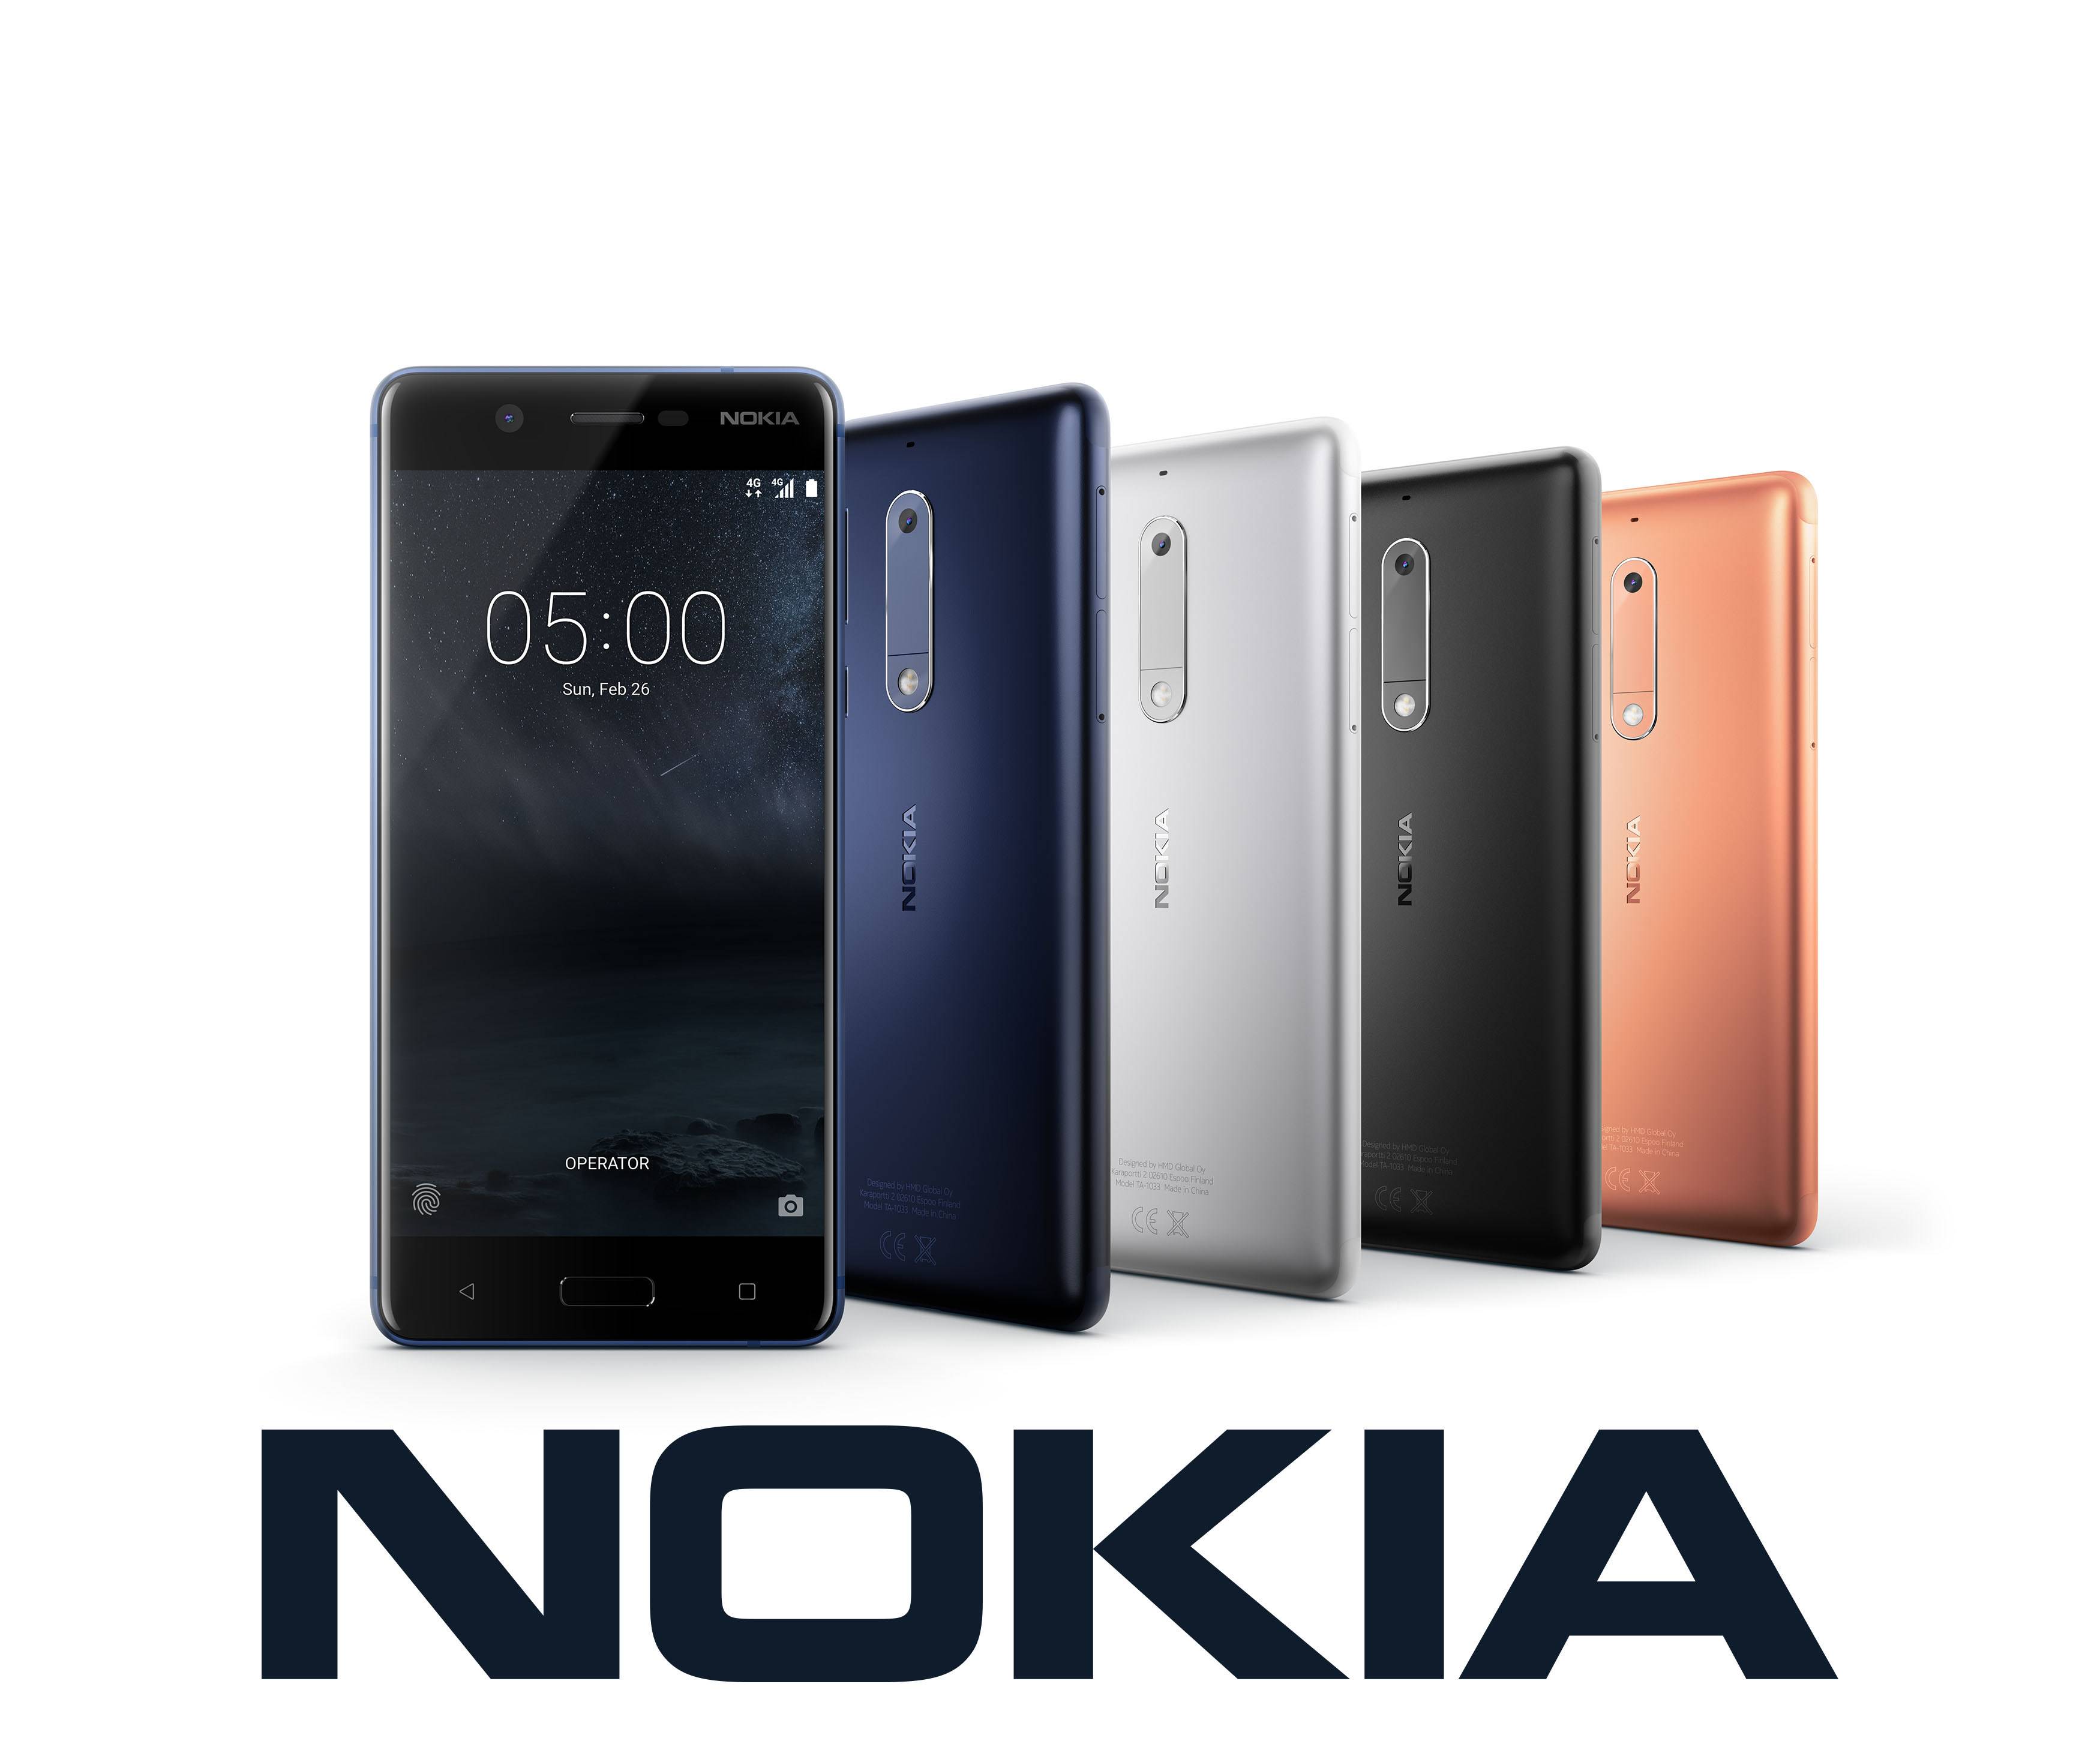 Nokia’s comeback in Nepal